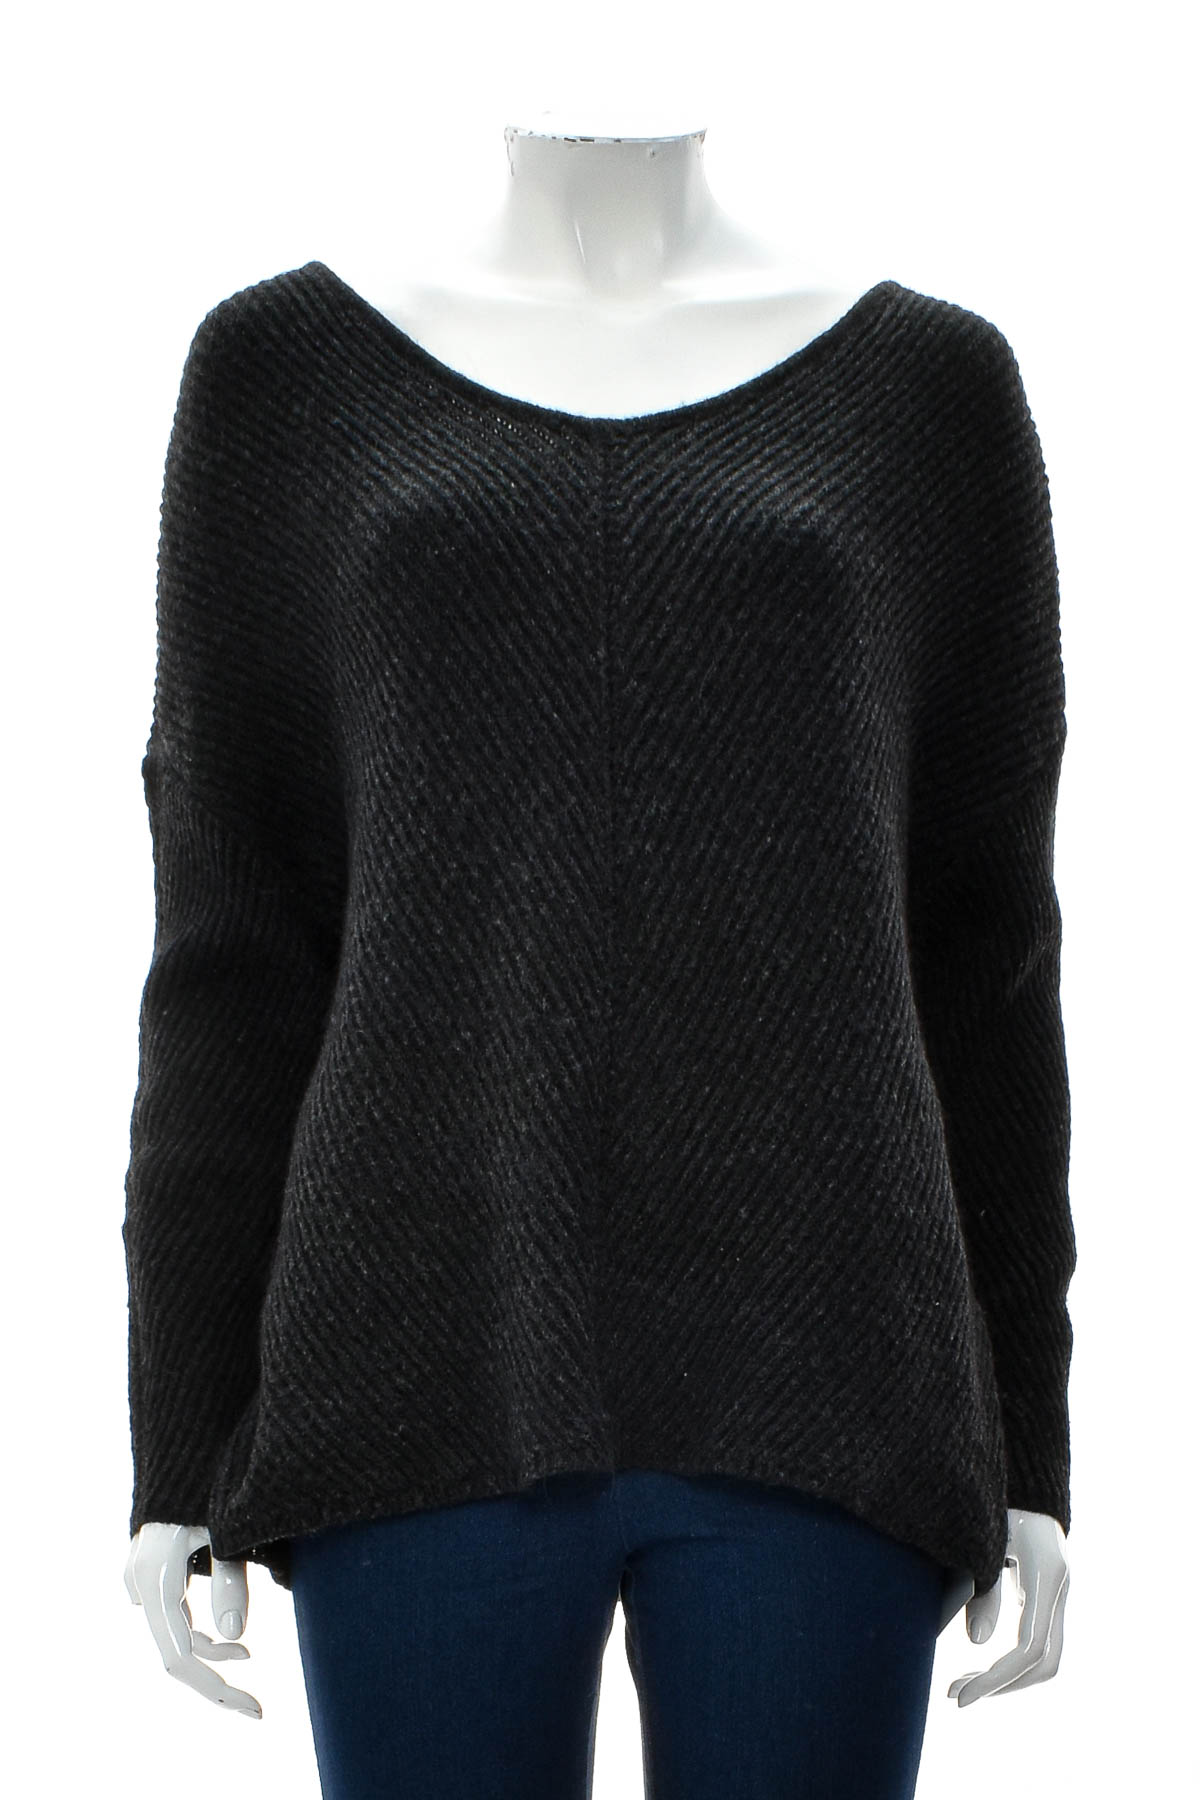 Women's sweater - VERO MODA - 0